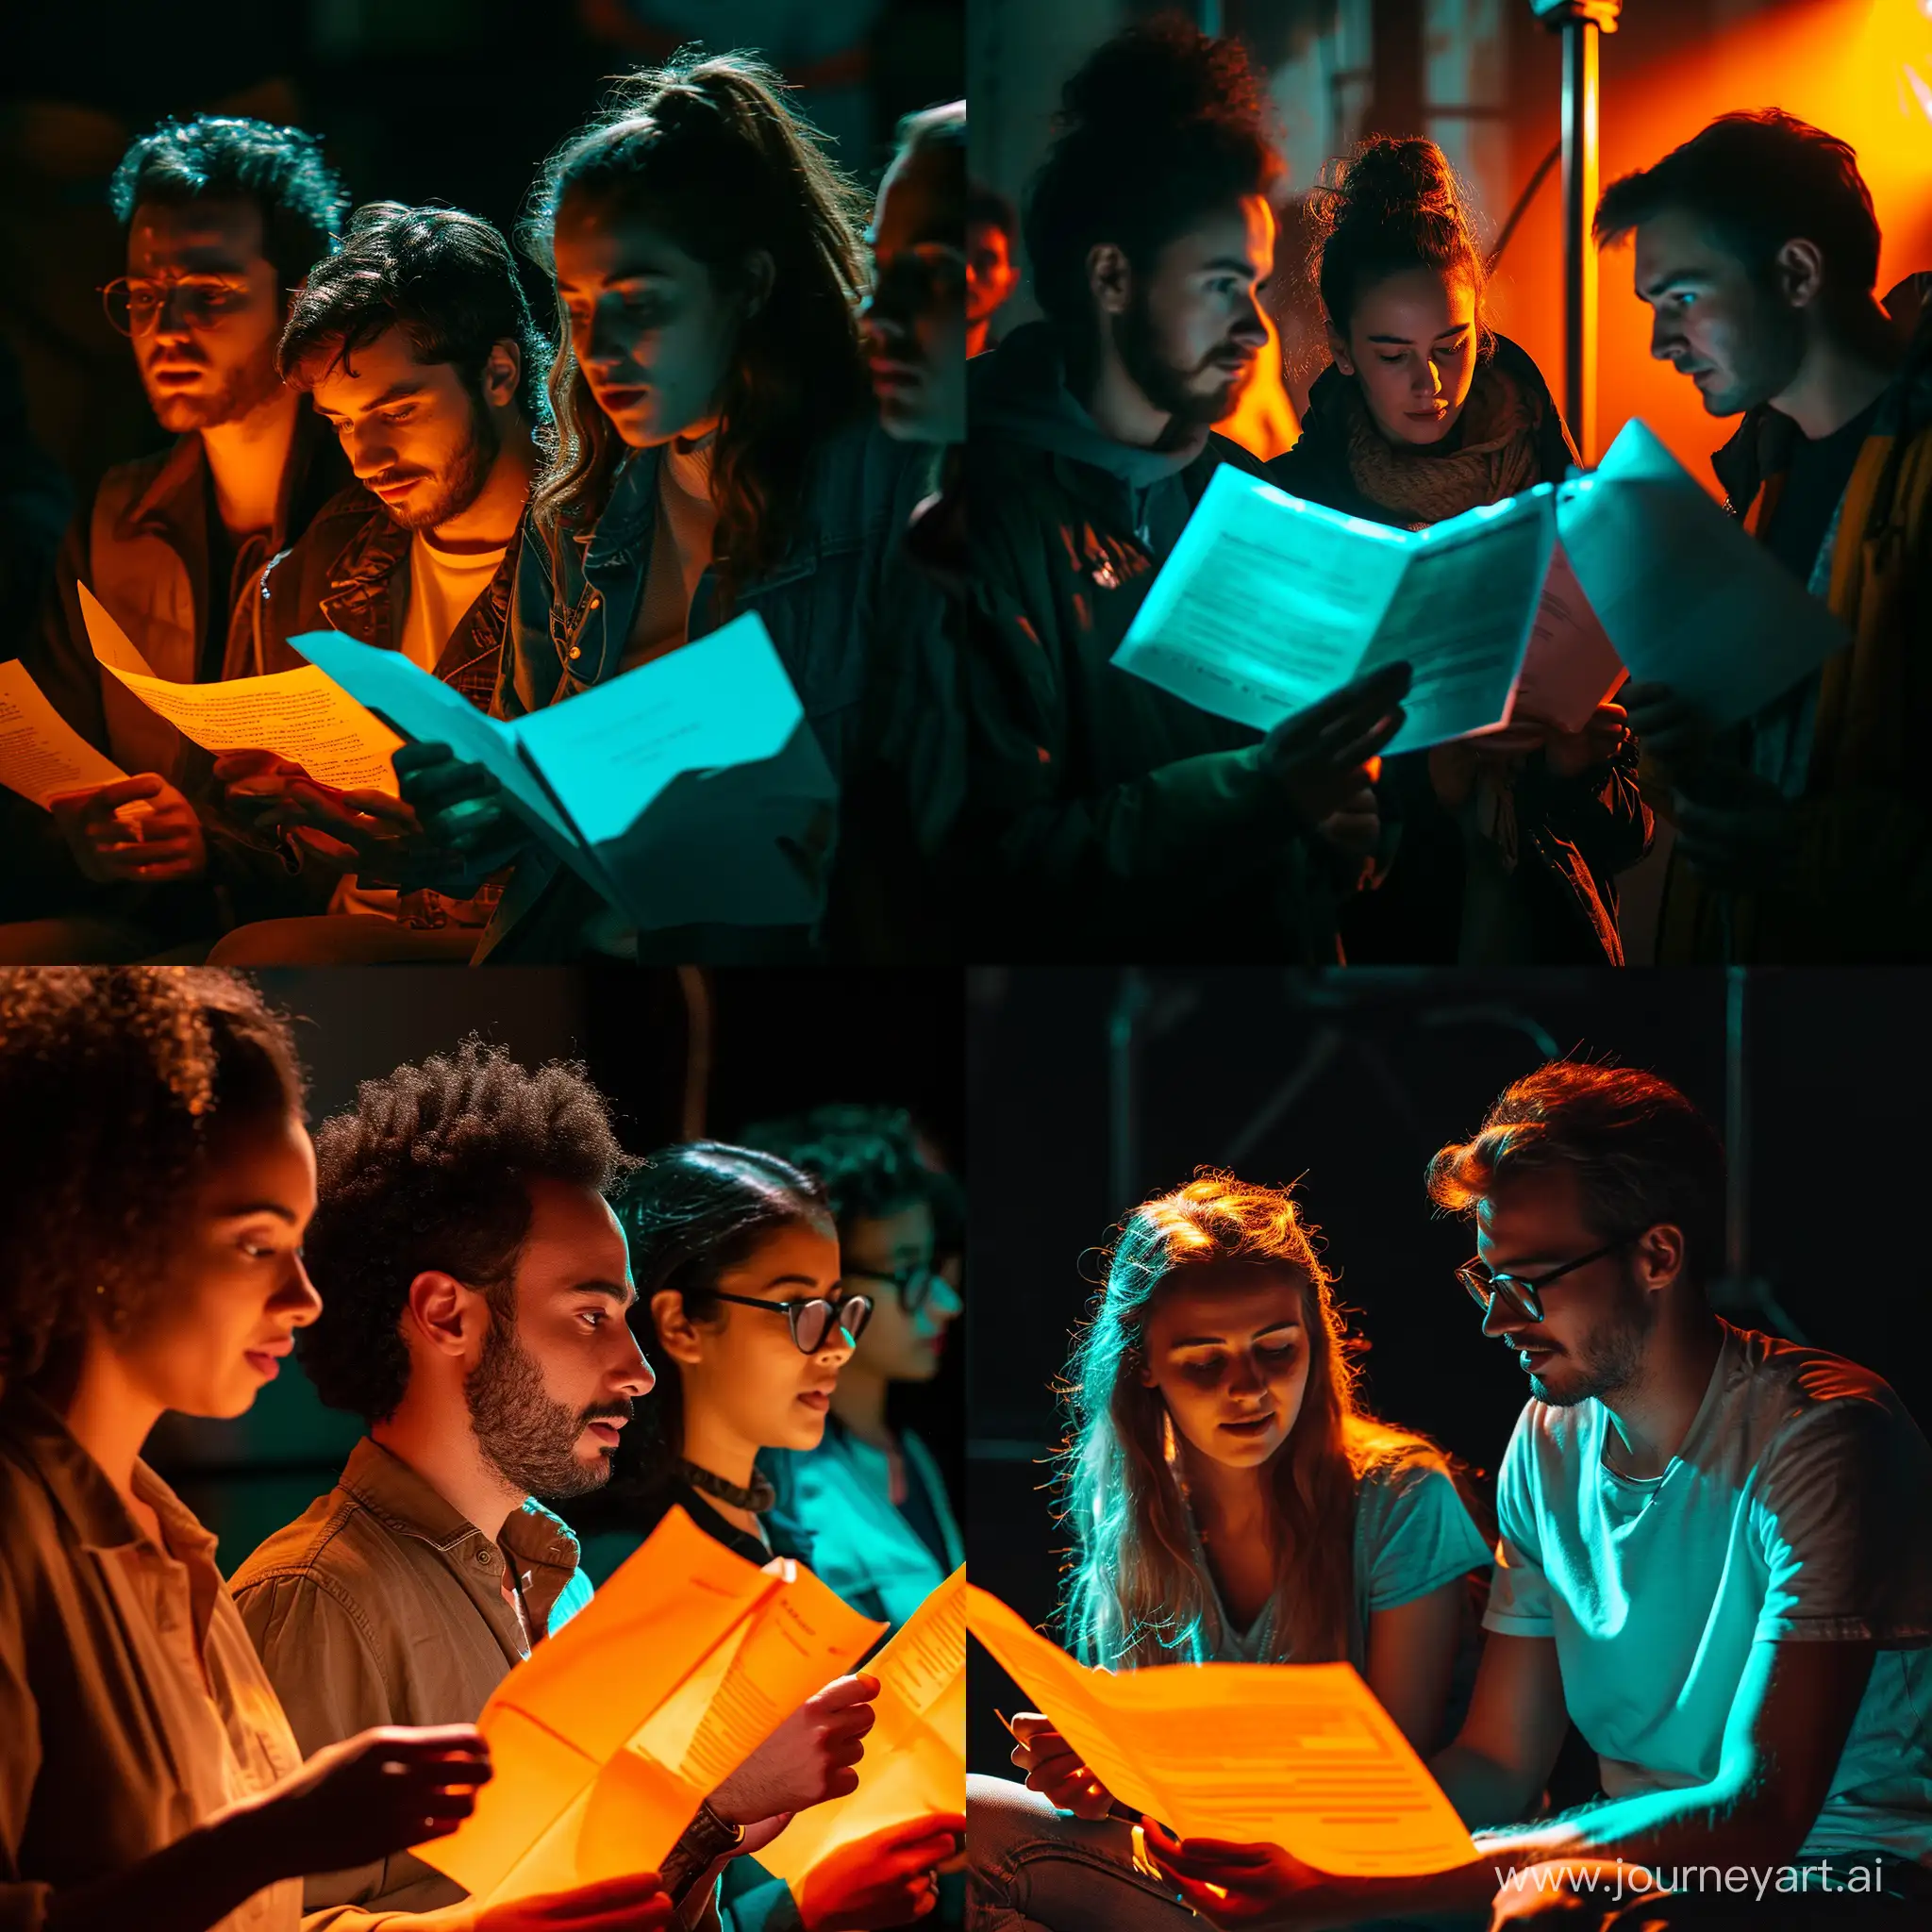 актёры читают сценарий светит свет оранжевый и бирюзовый